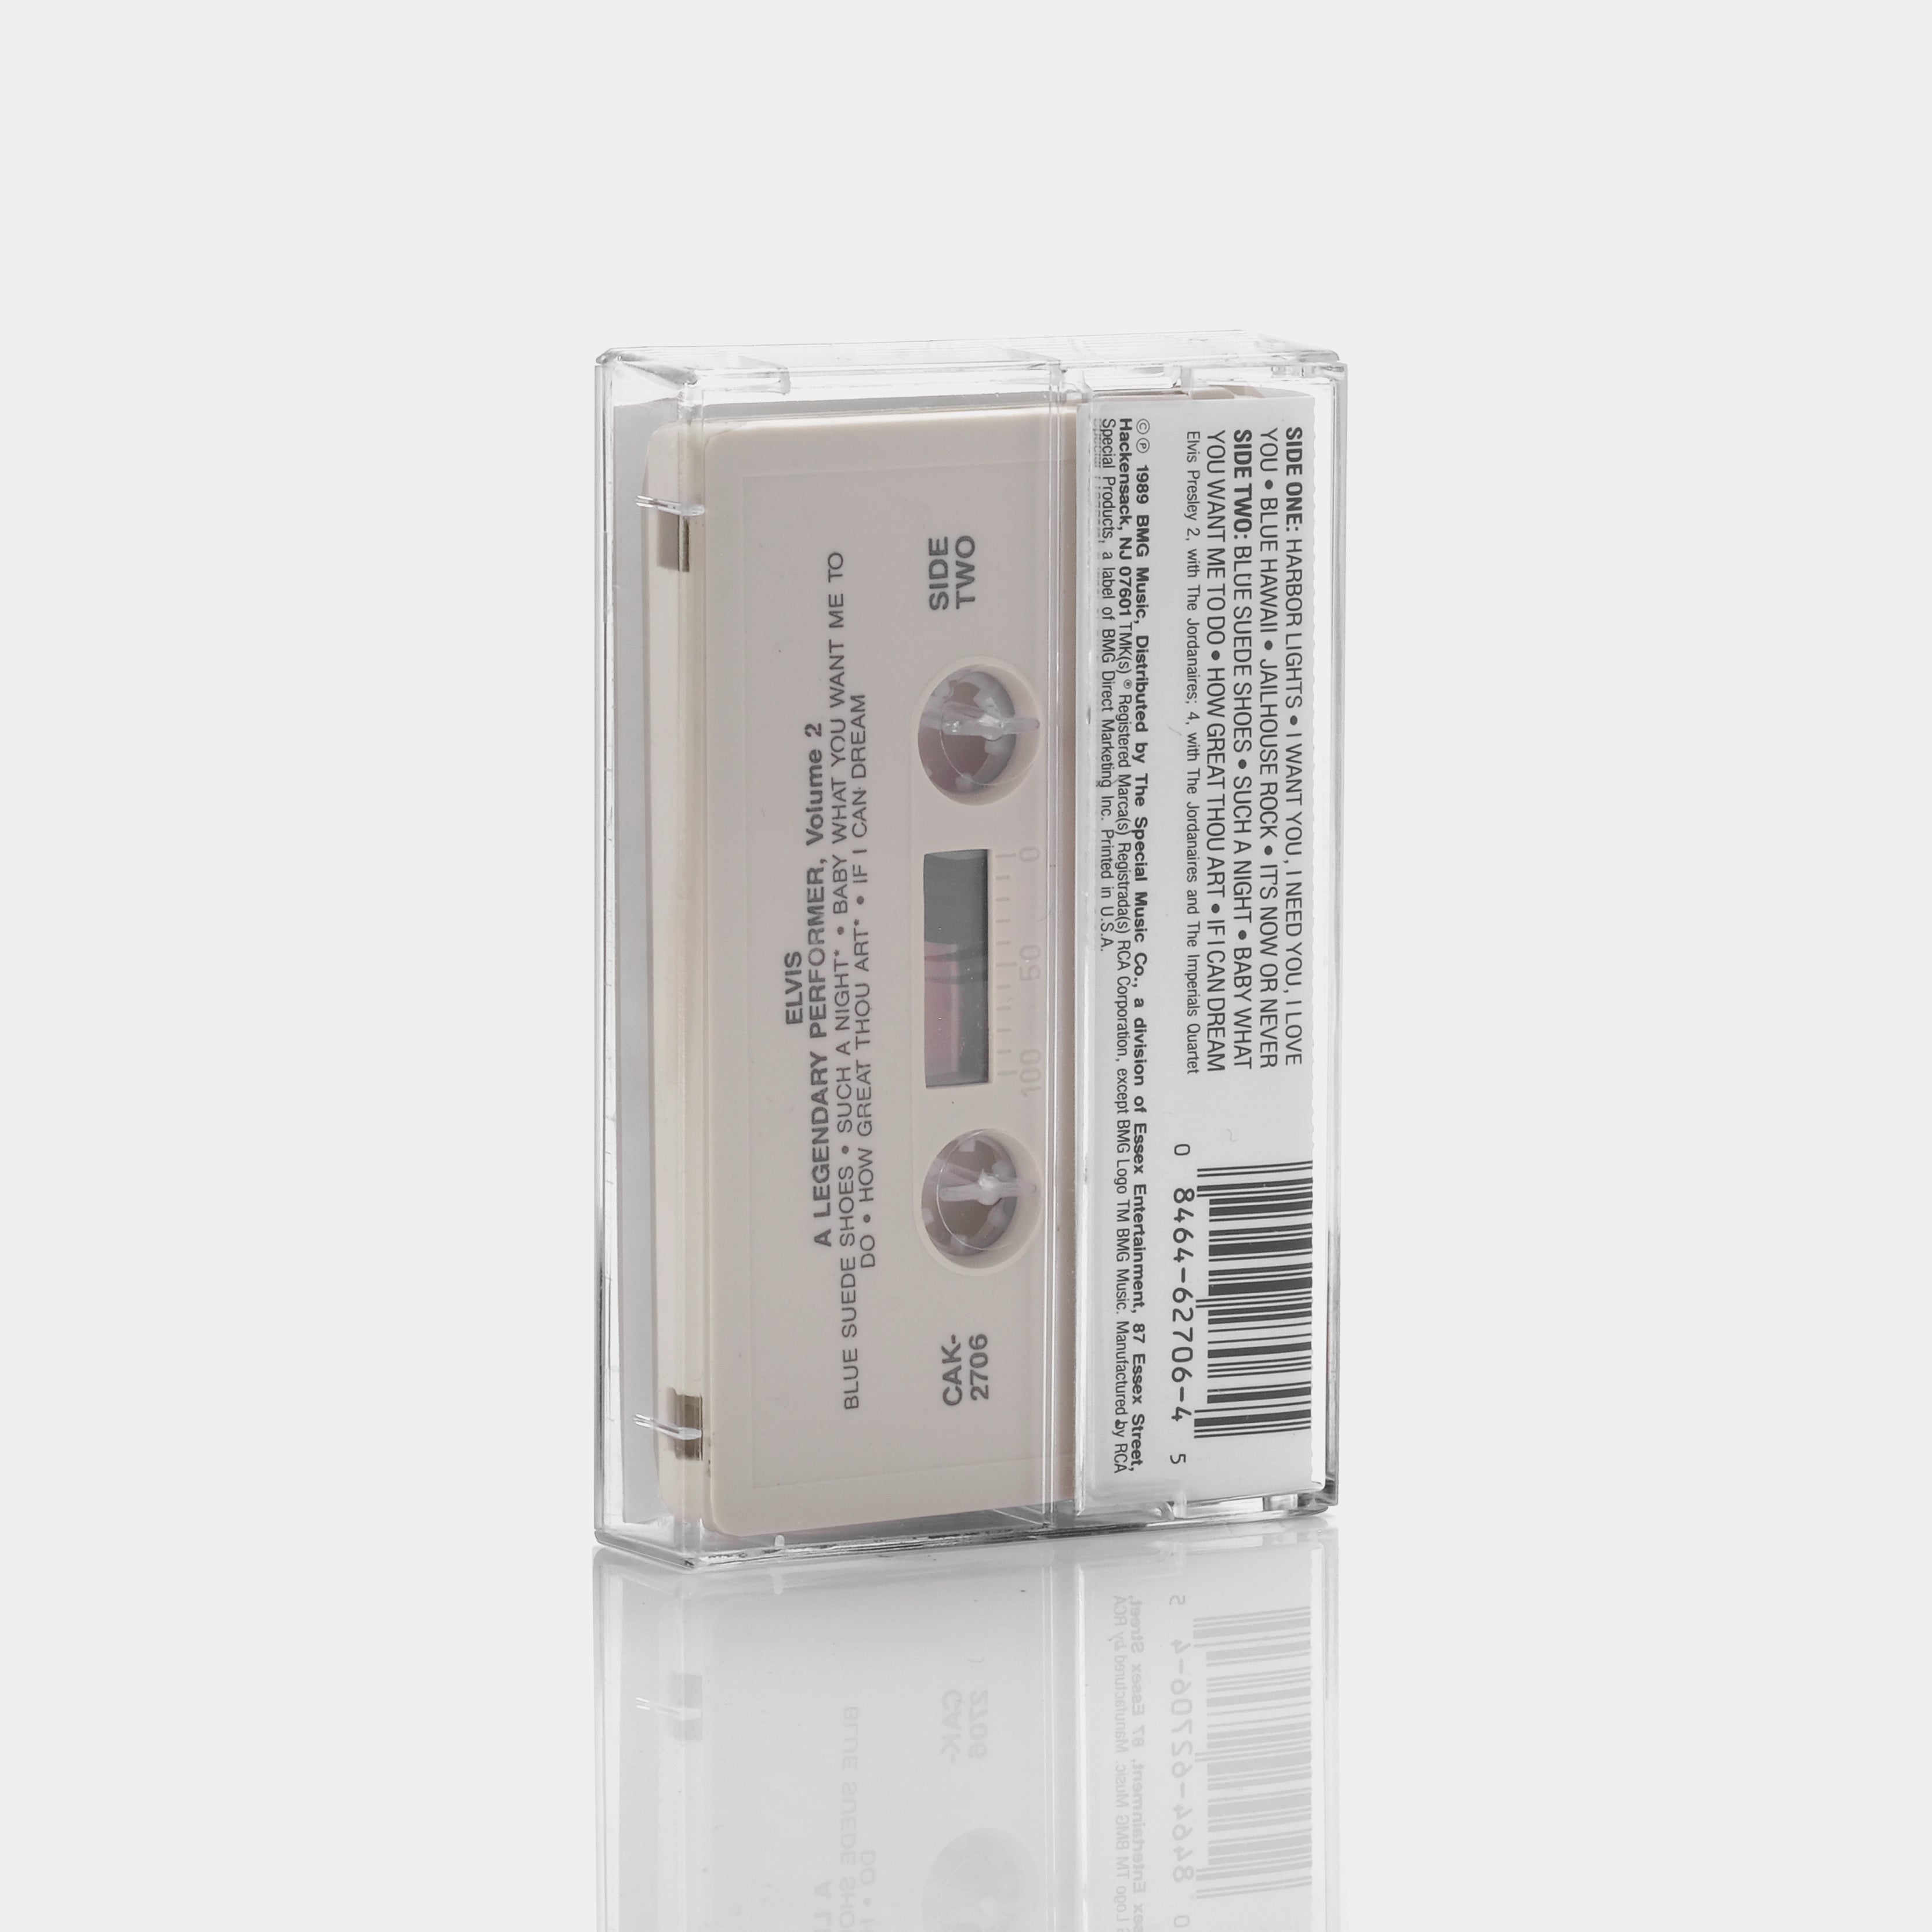 Elvis - A Legendary Performer - Volume 2 Cassette Tape